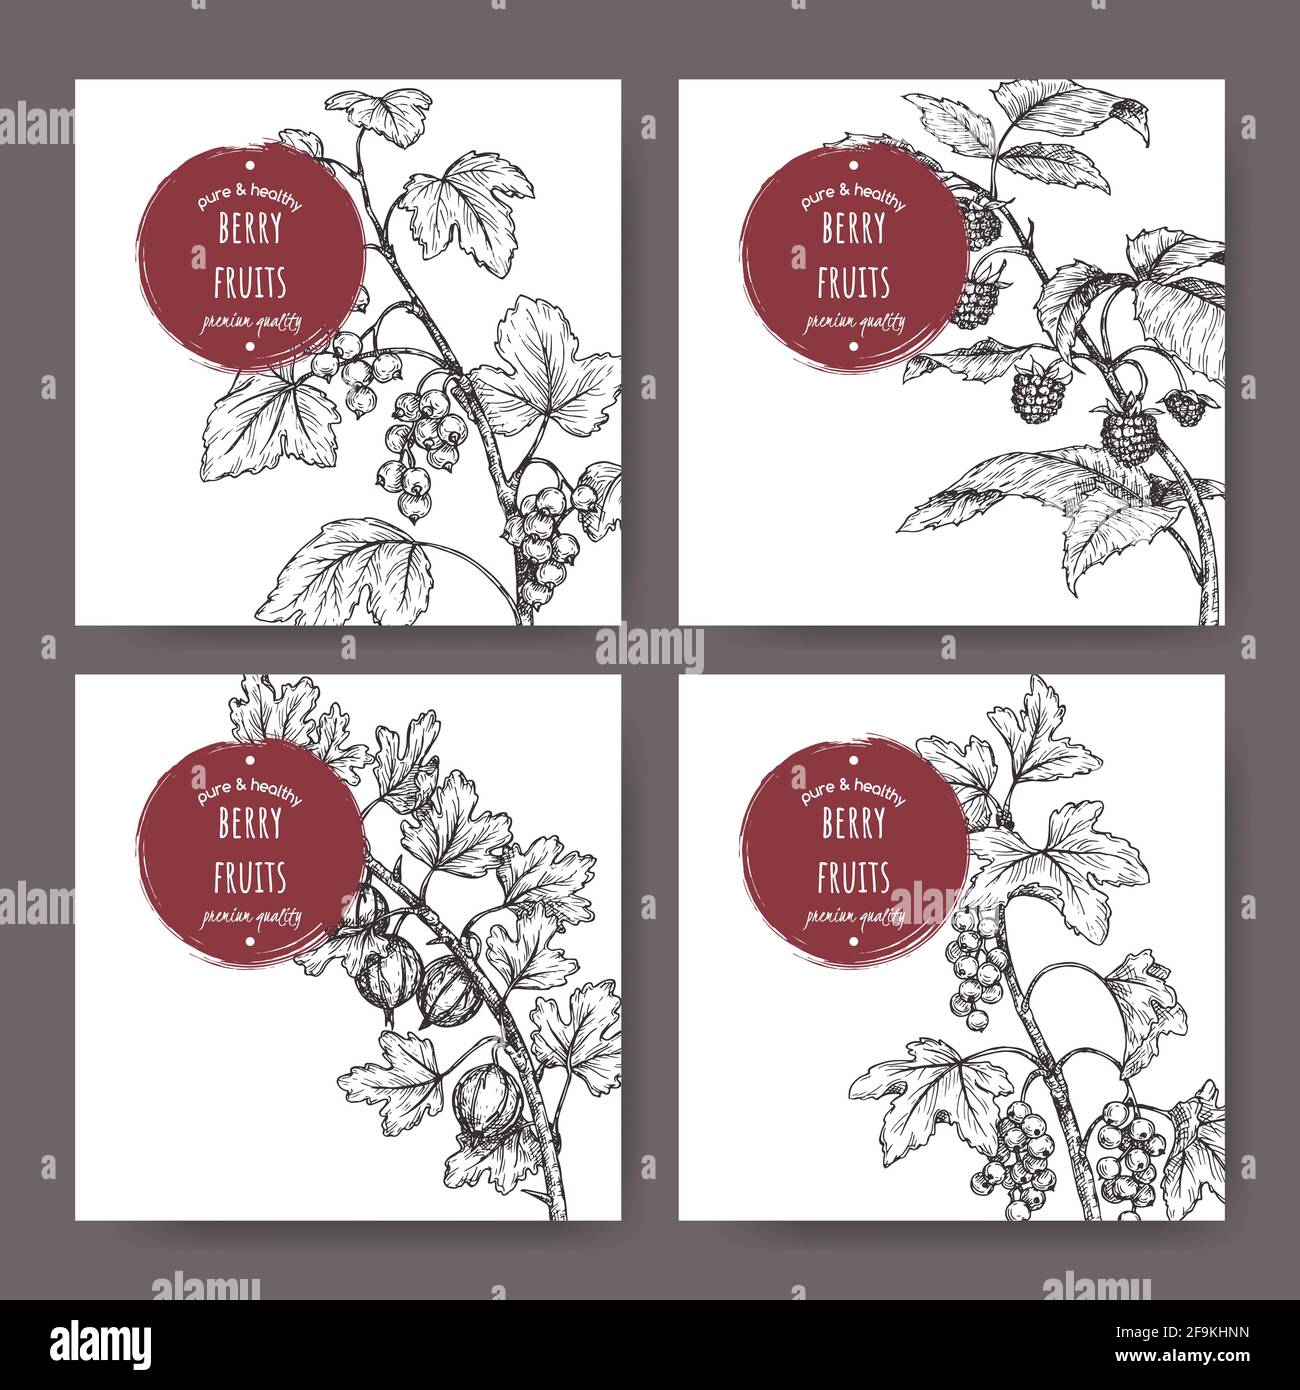 Set aus vier Etiketten mit schwarzer Johannisbeere, roter Johannisbeere, Himbeere und Stachelbeere Skizze. Berry Fruits Serie. Stock Vektor